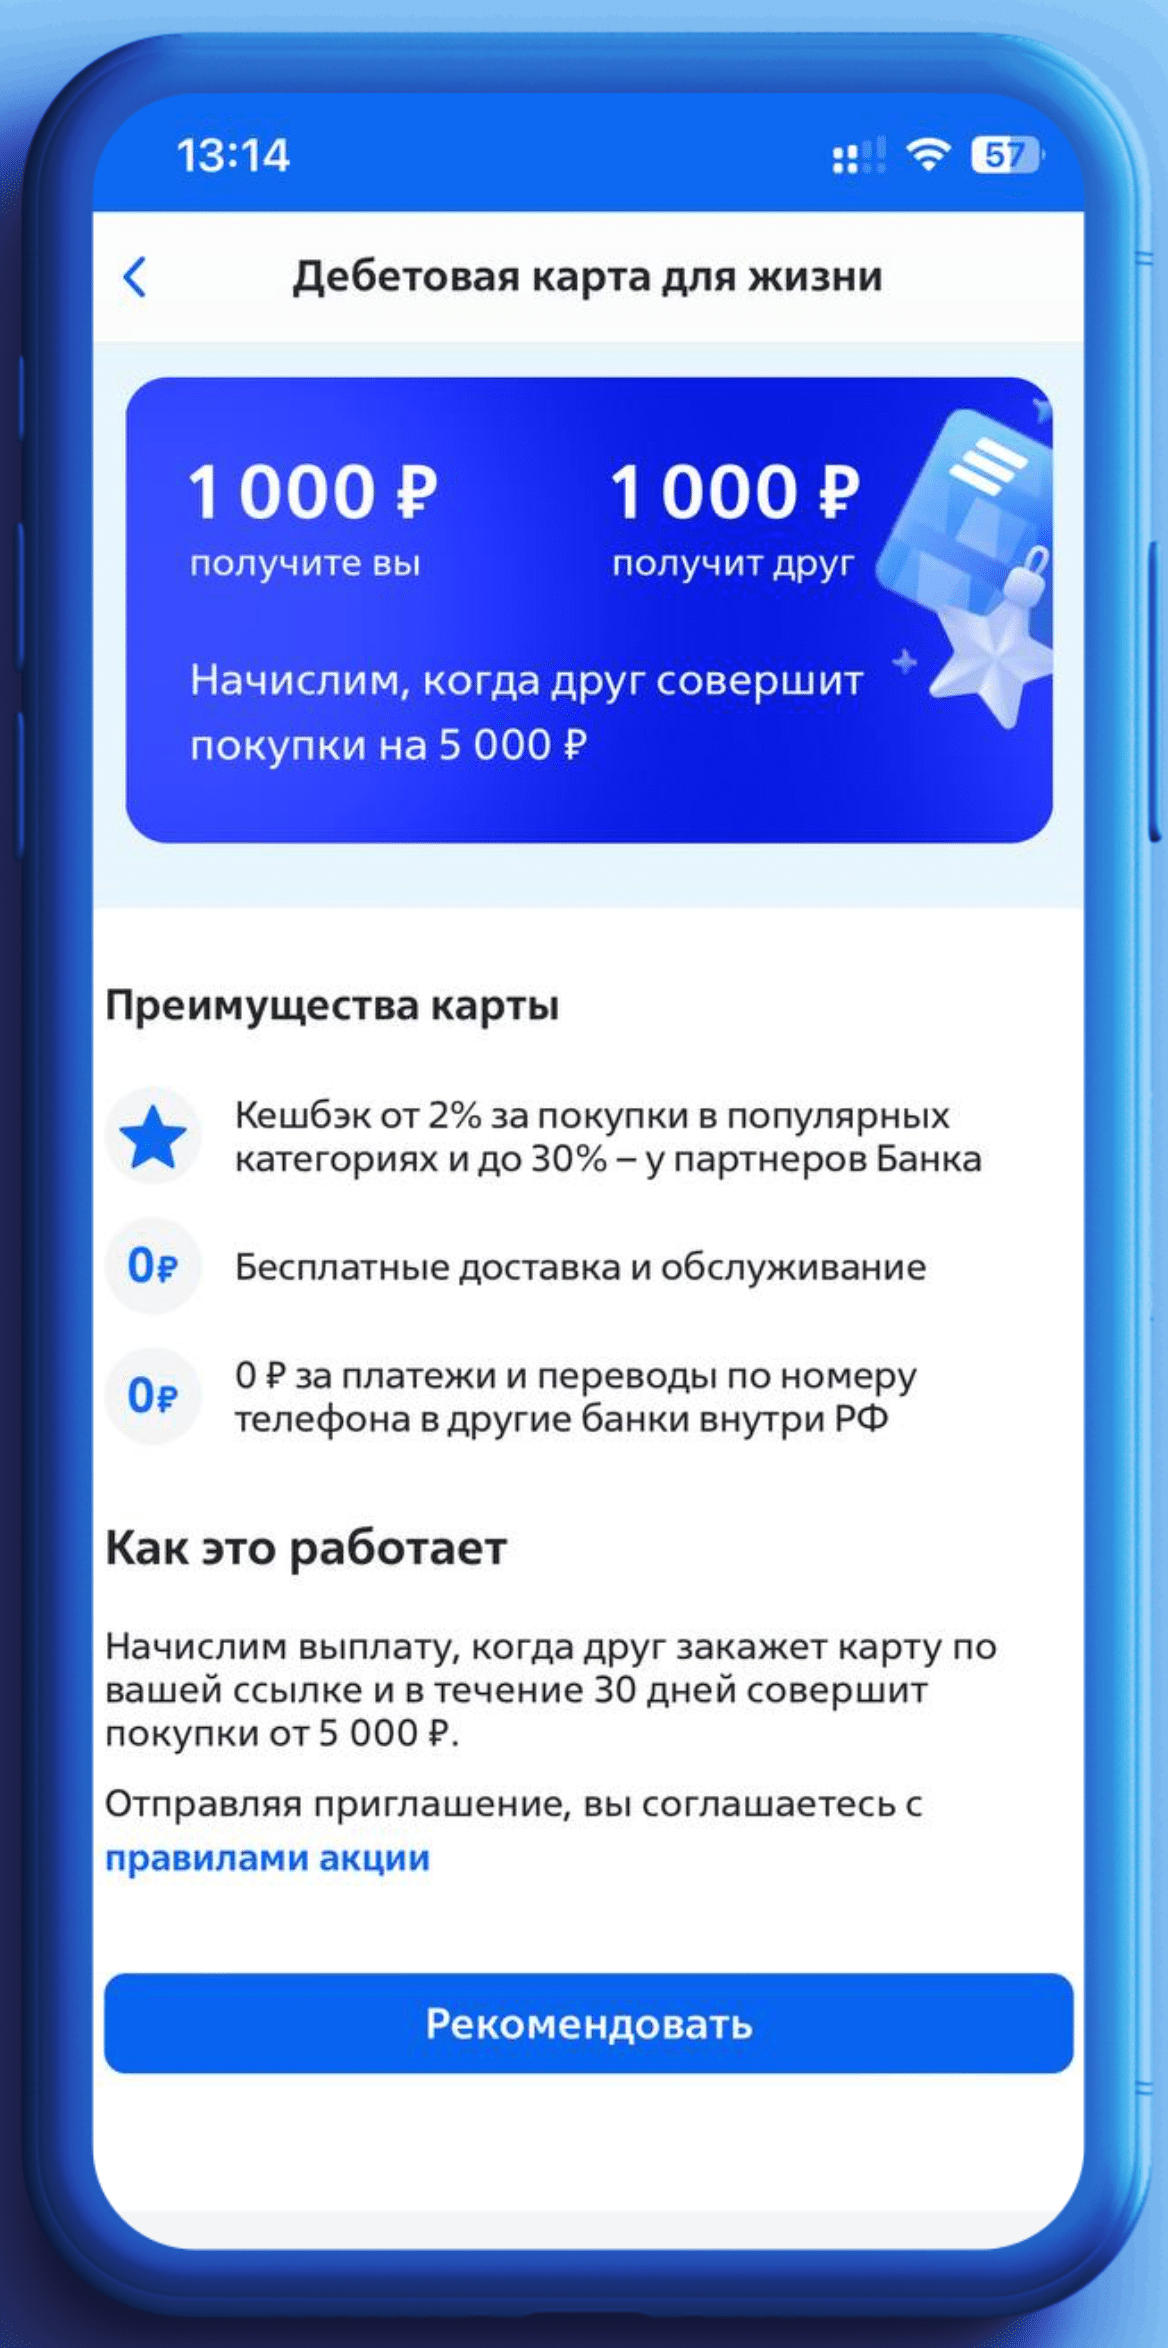 Дебетовая карта ВТБ ссылка реферальная +1000 рублей